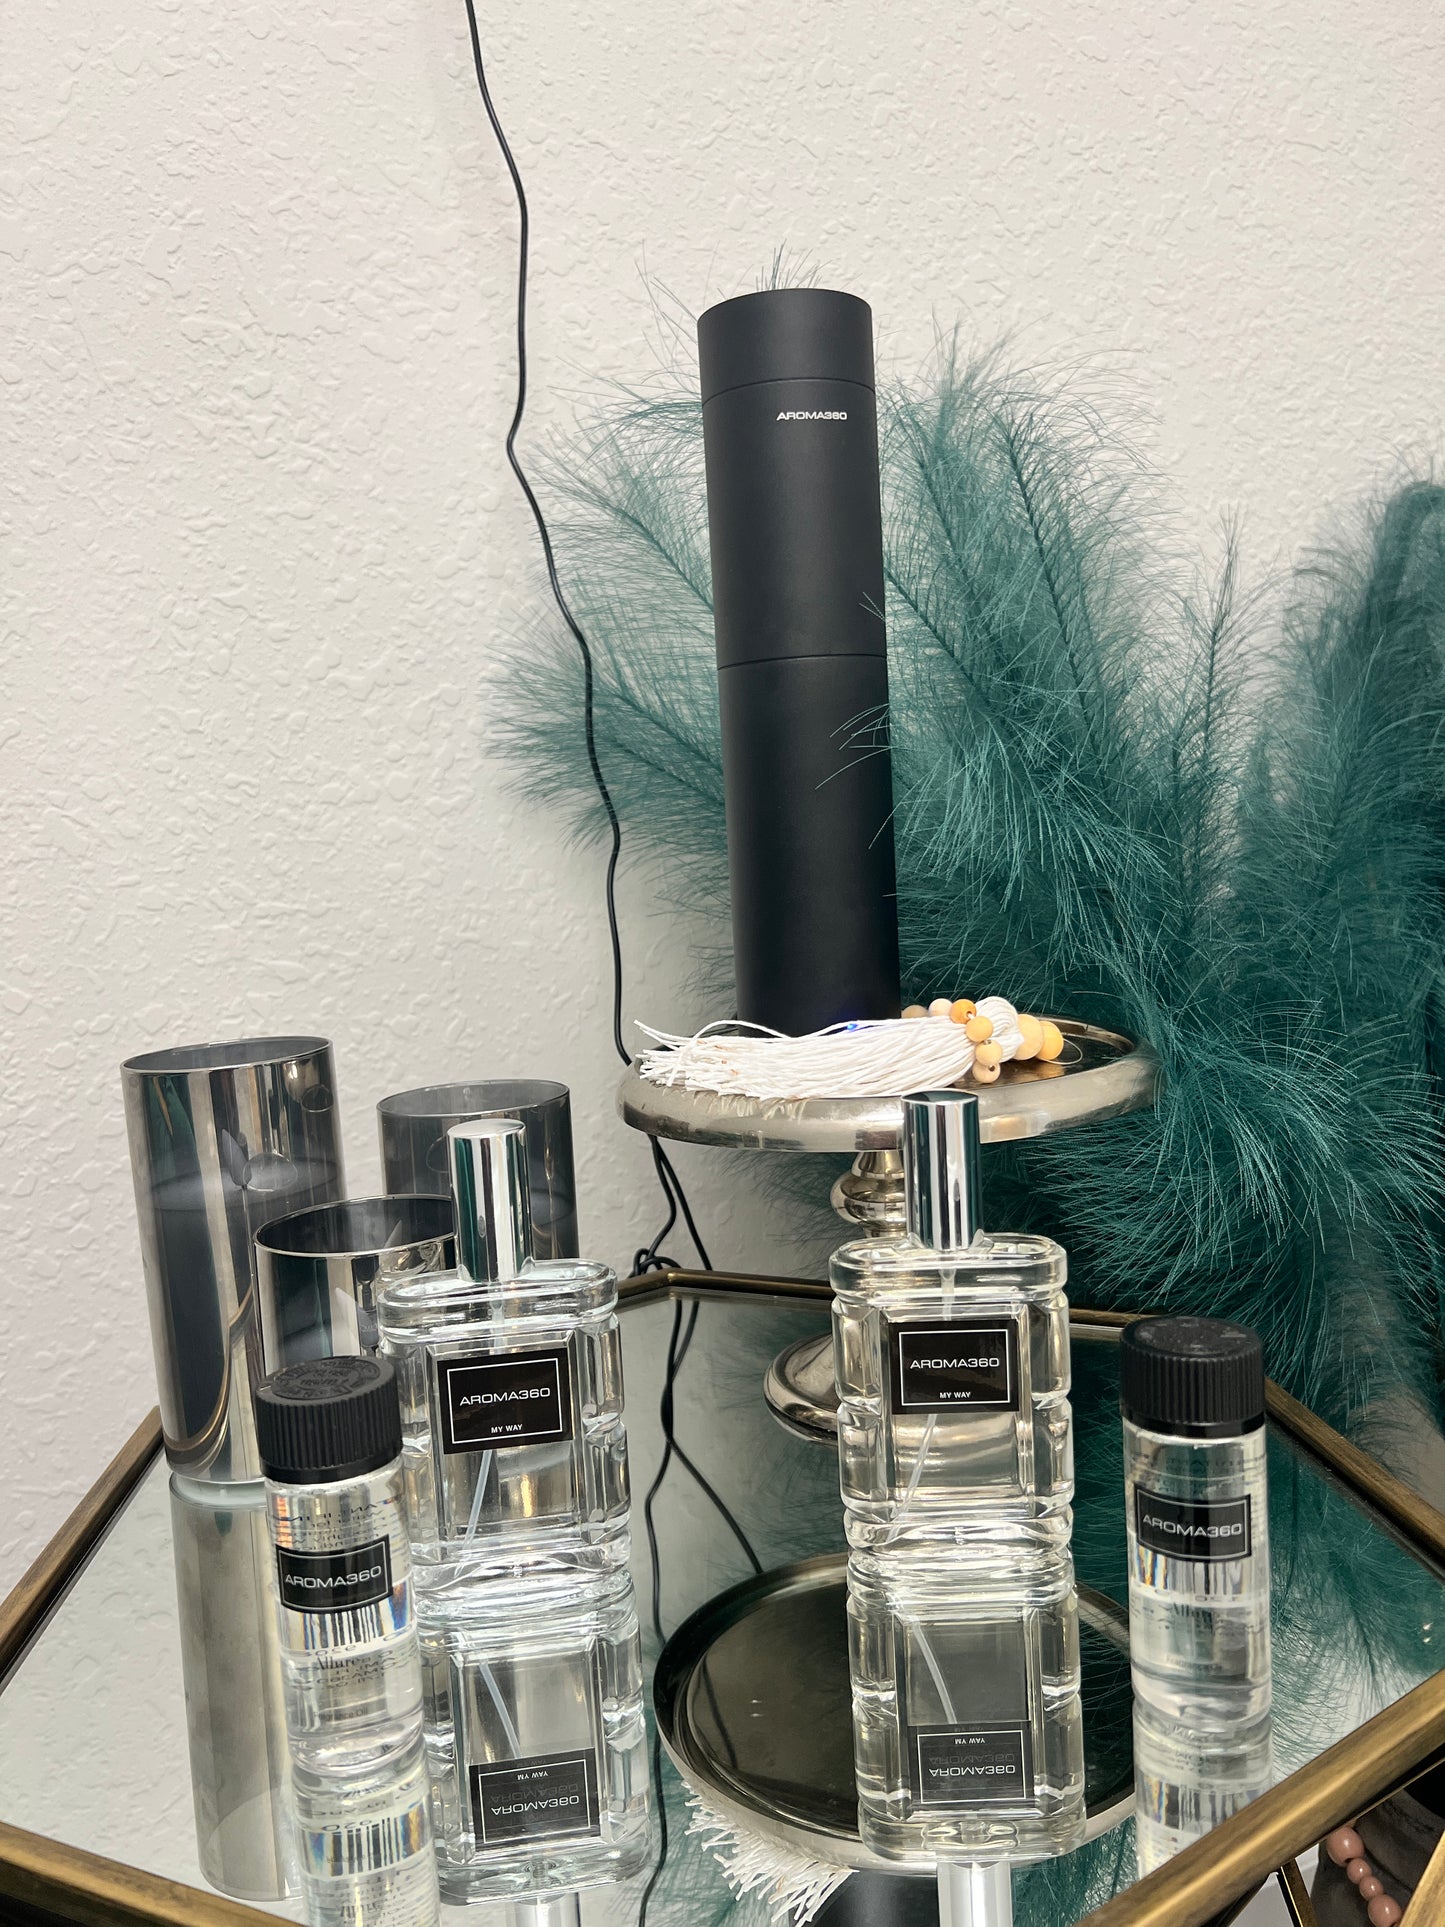 Aroma 360 & Fragrances